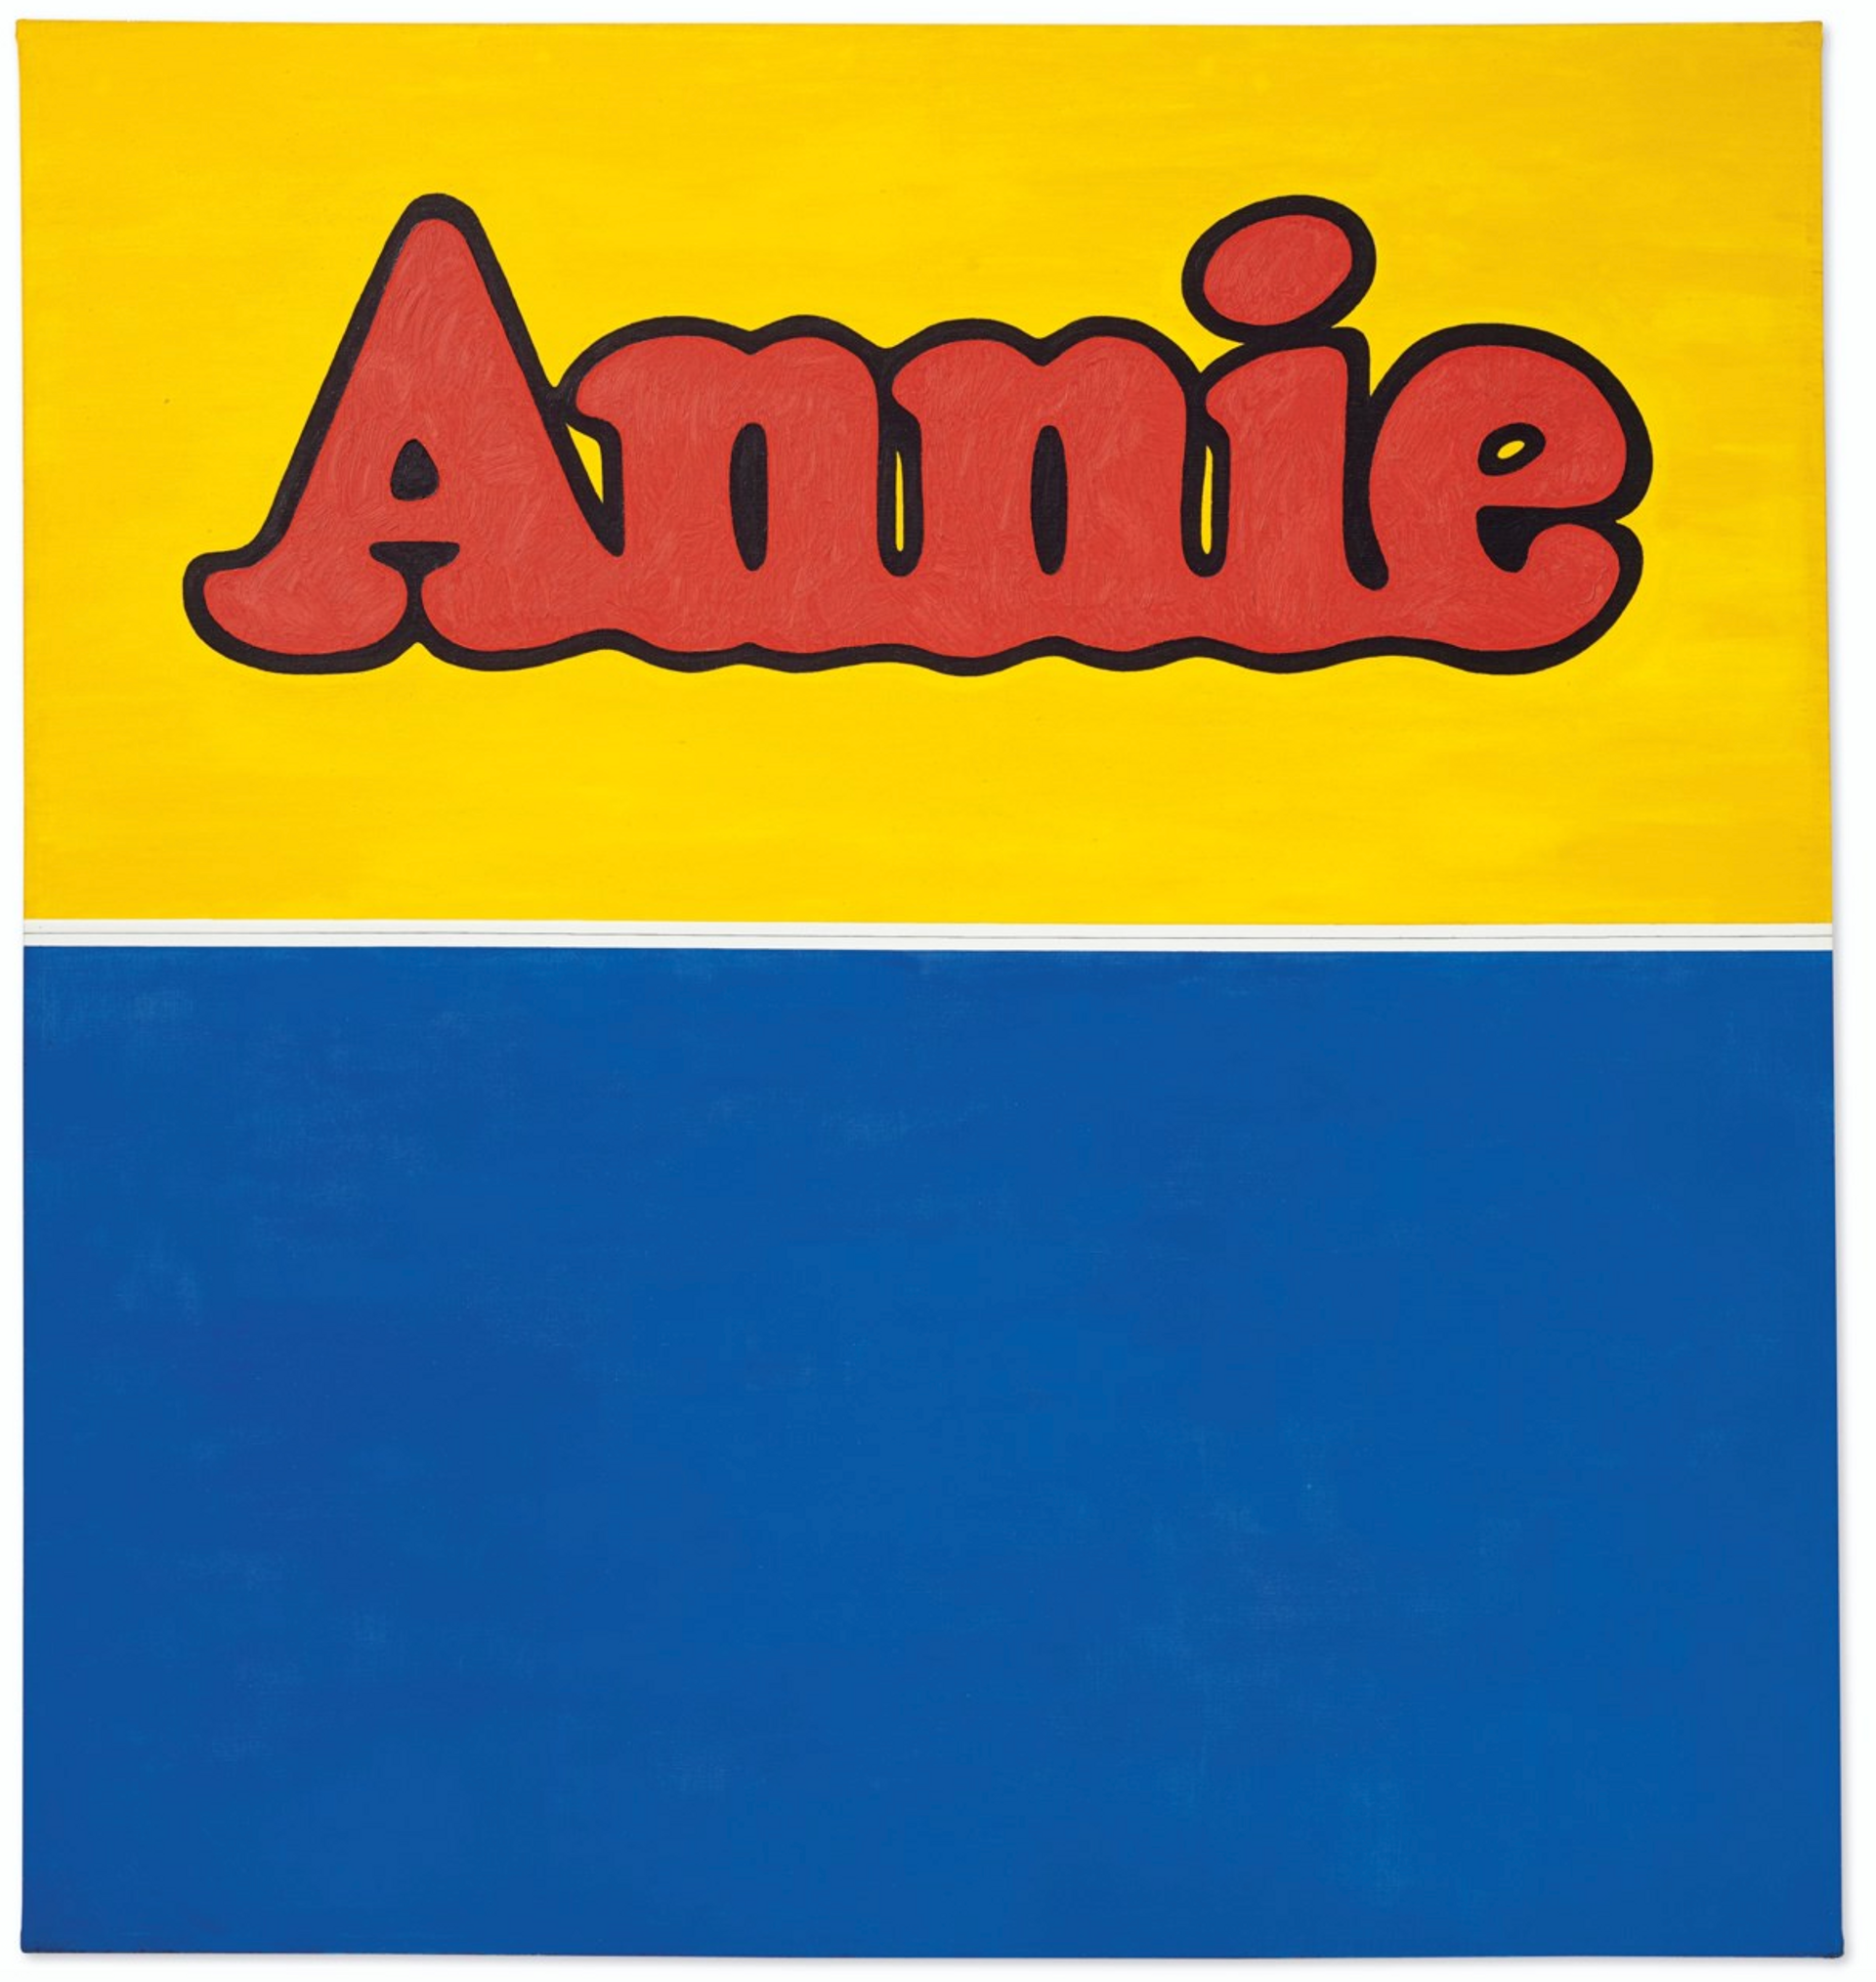 Annie by Ed Ruscha 